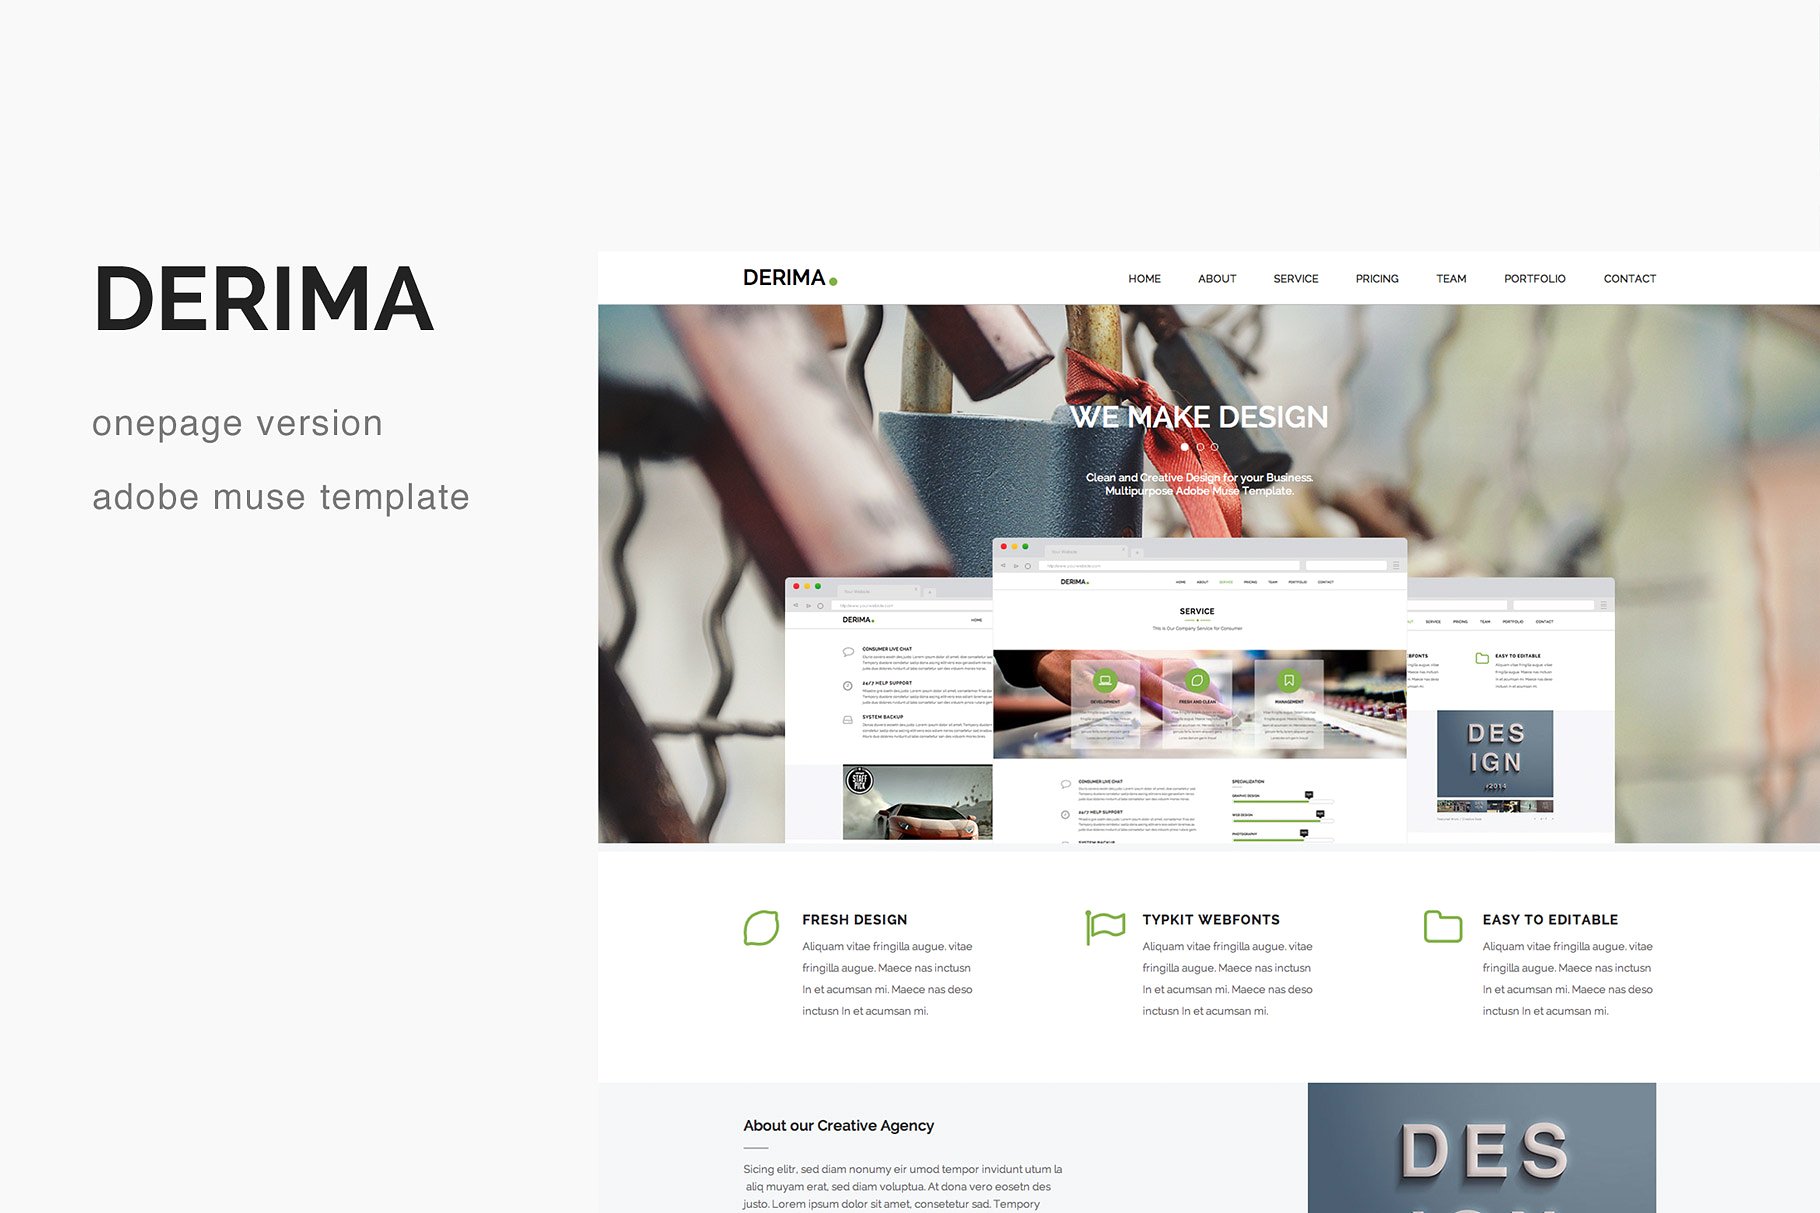 多用途视差创意单页网站设计Muse模板素材中国精选 Derima – One Page Muse Template插图